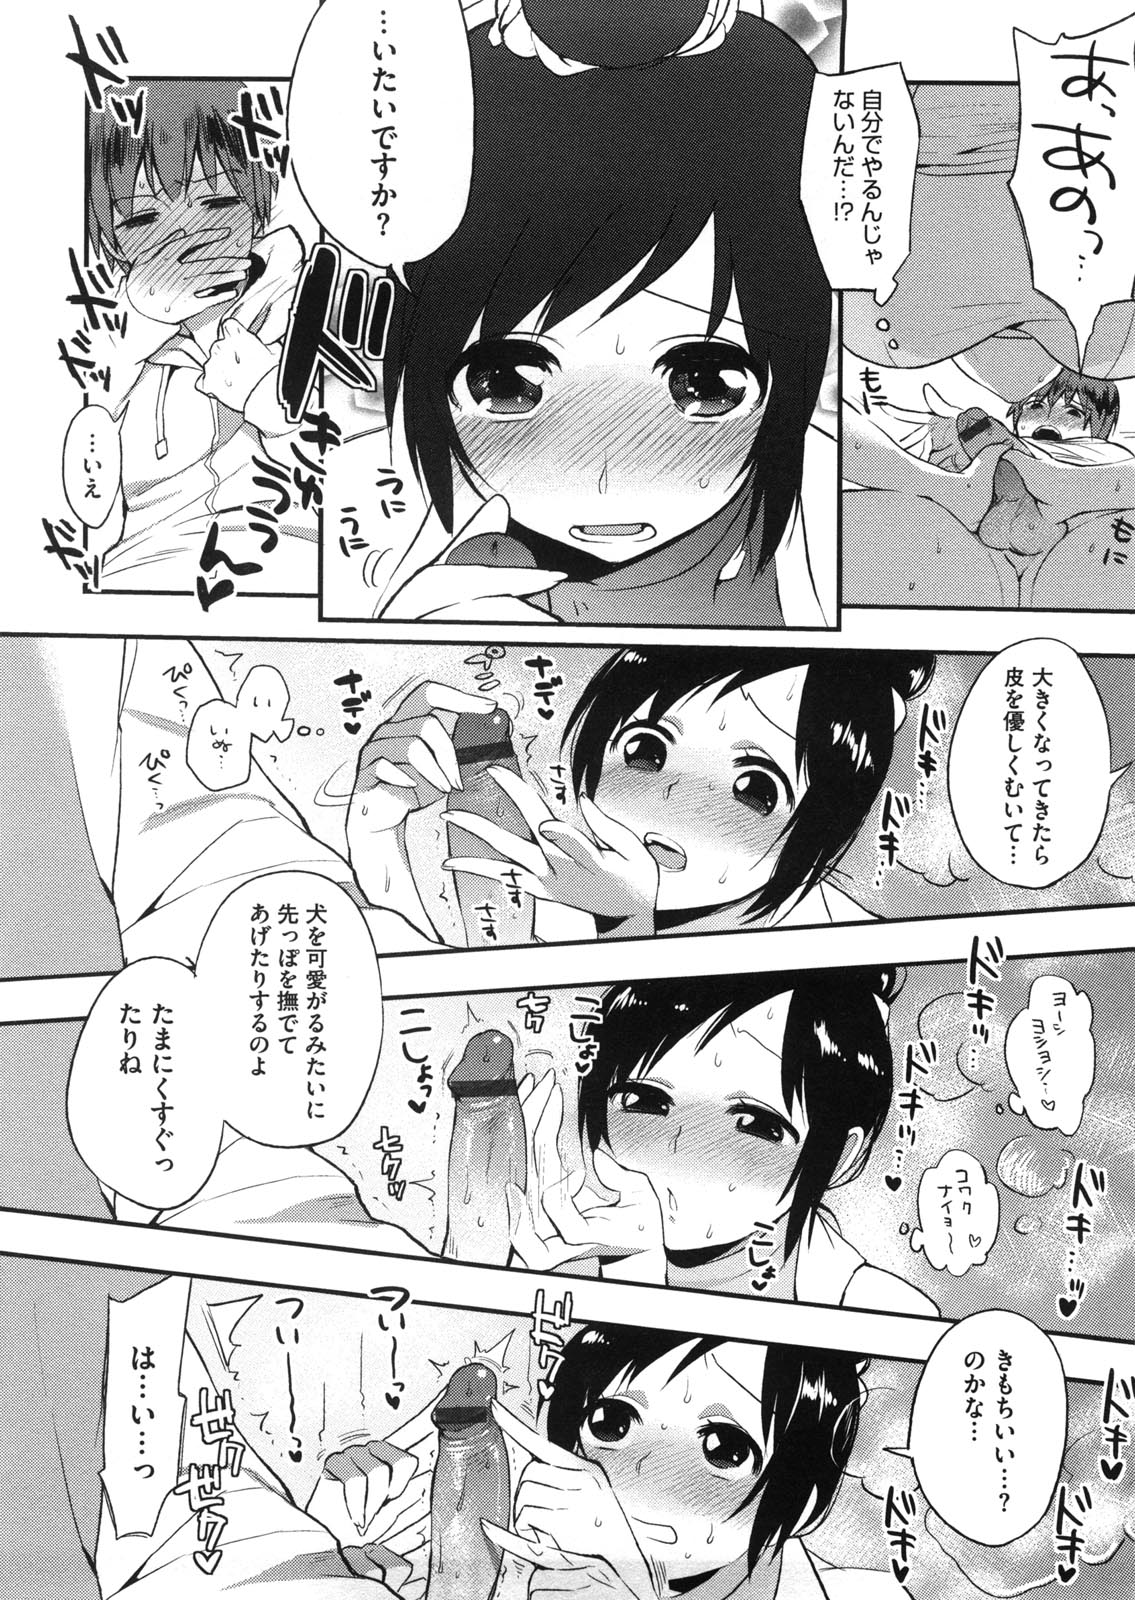 [Igumox] Yosugara Sexology page 17 full